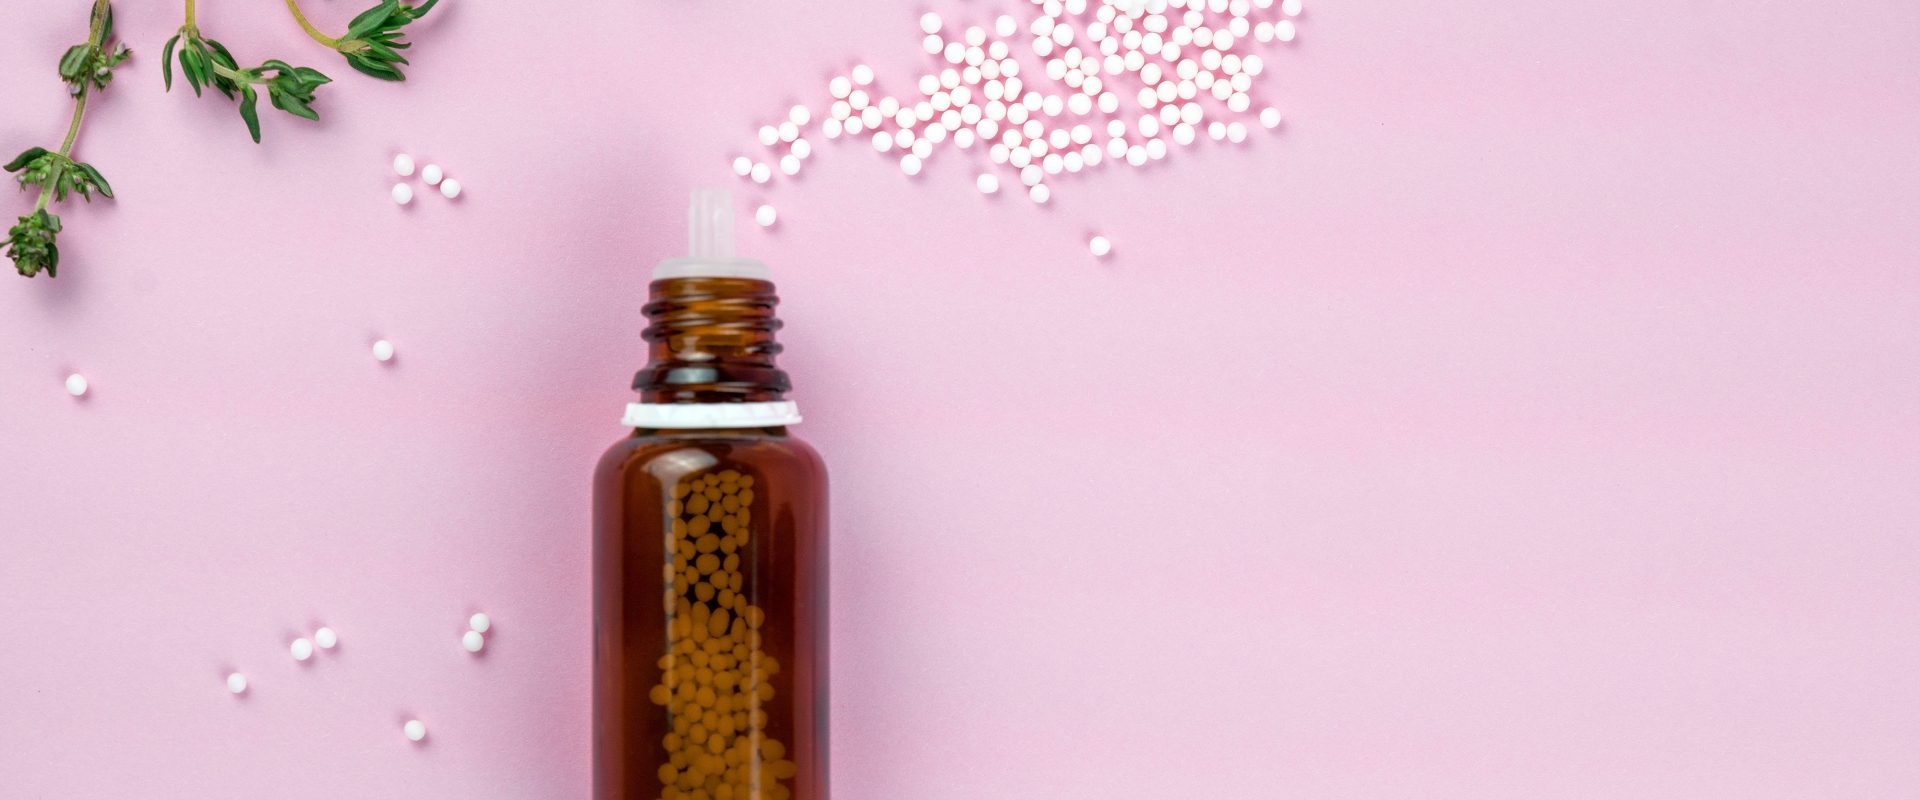 Cuprum metallicum - lek homeopatyczny na skurcze. Leżąca na płasko fiolka z wysypanymi lekami homeopatycznymi na fioletowym tle.